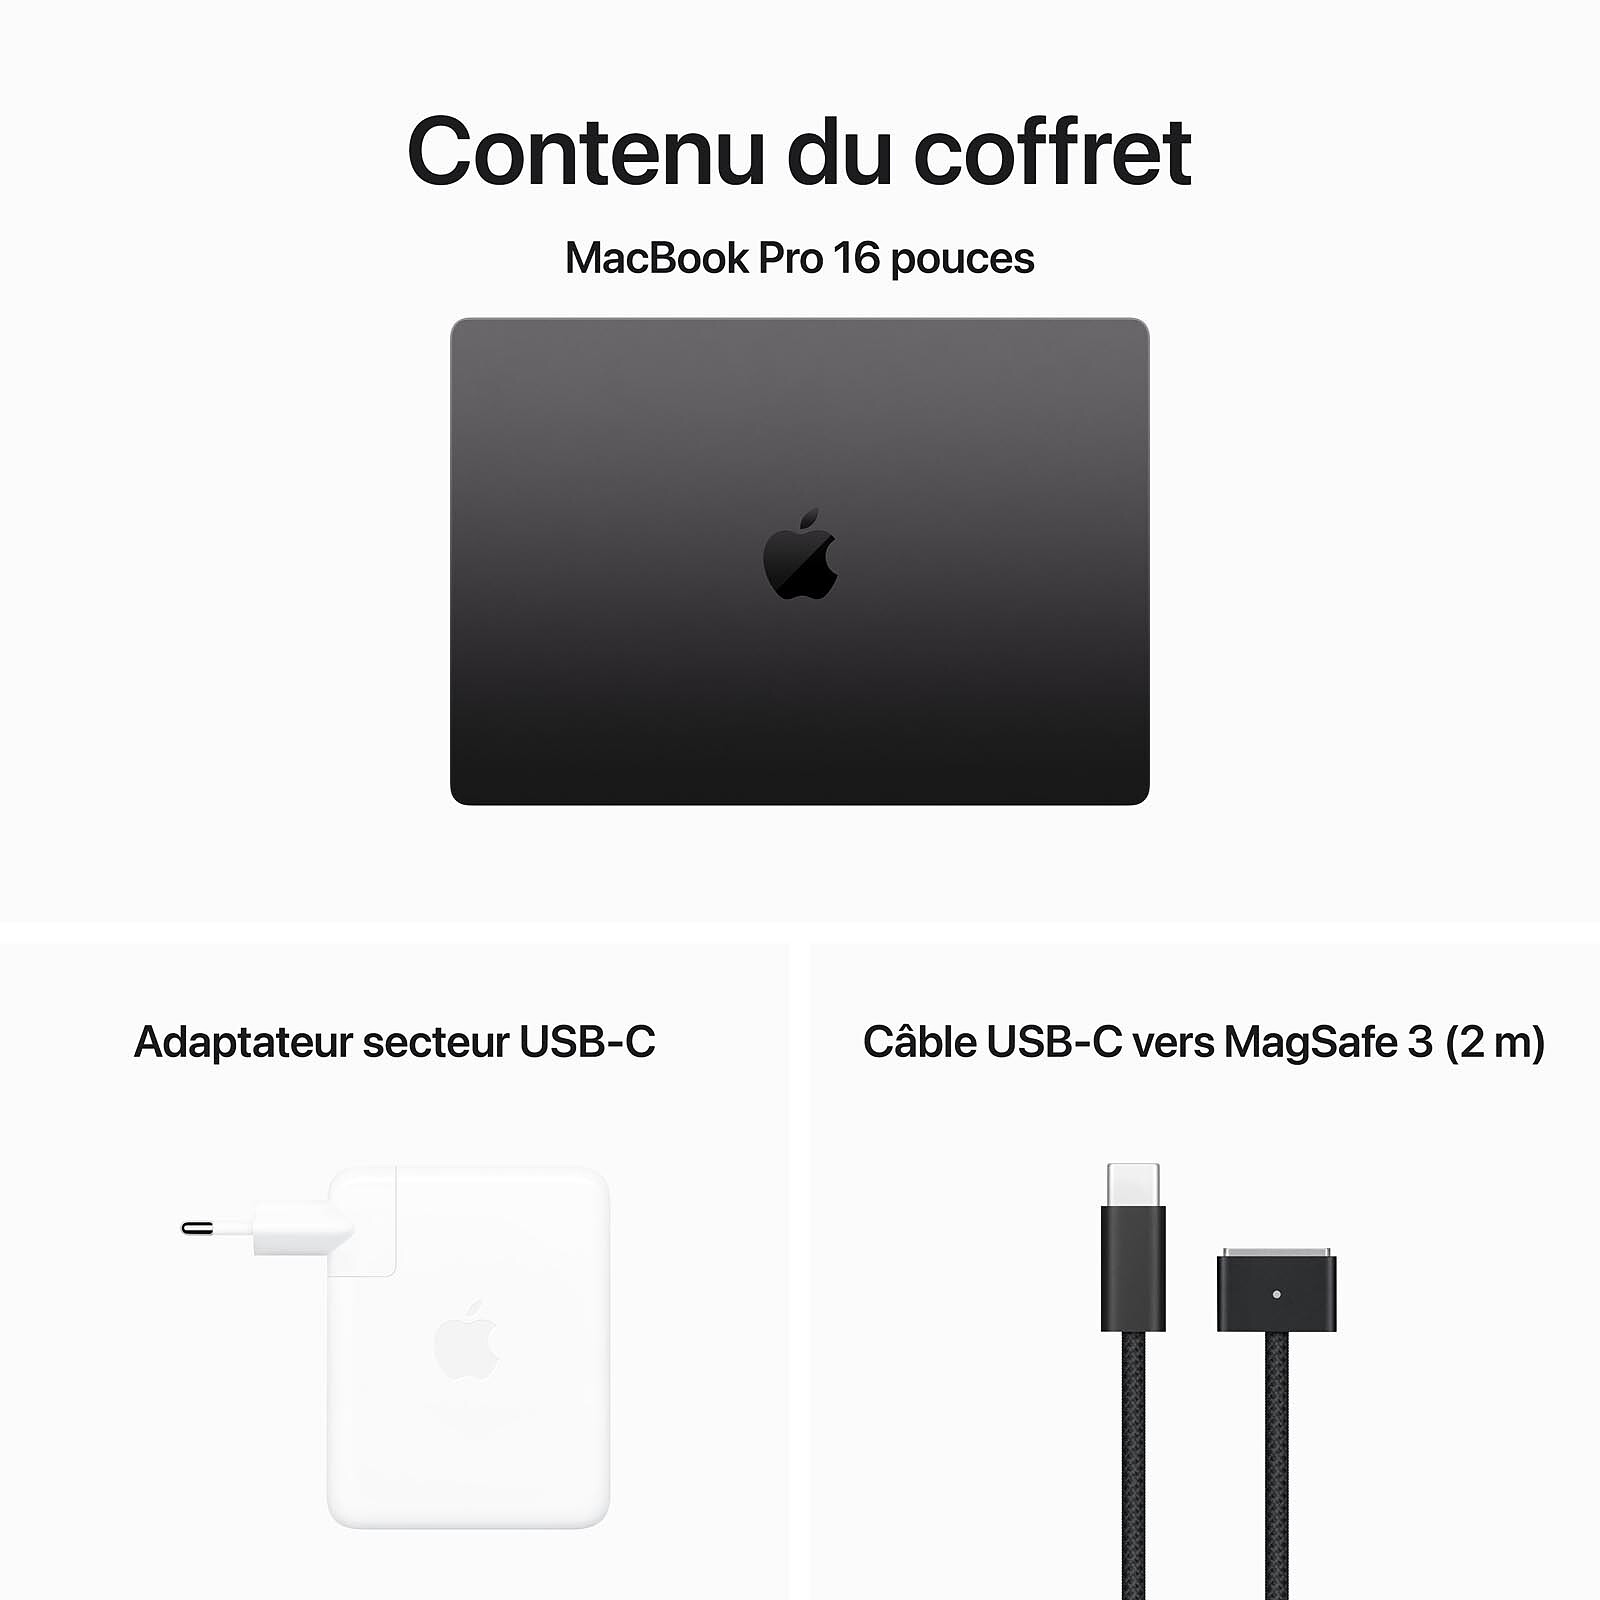 Apple MacBook Air M1 (2020) Gris sidéral 8Go/256 Go (MGN63FN/A-QWERTY) -  MacBook - Garantie 3 ans LDLC